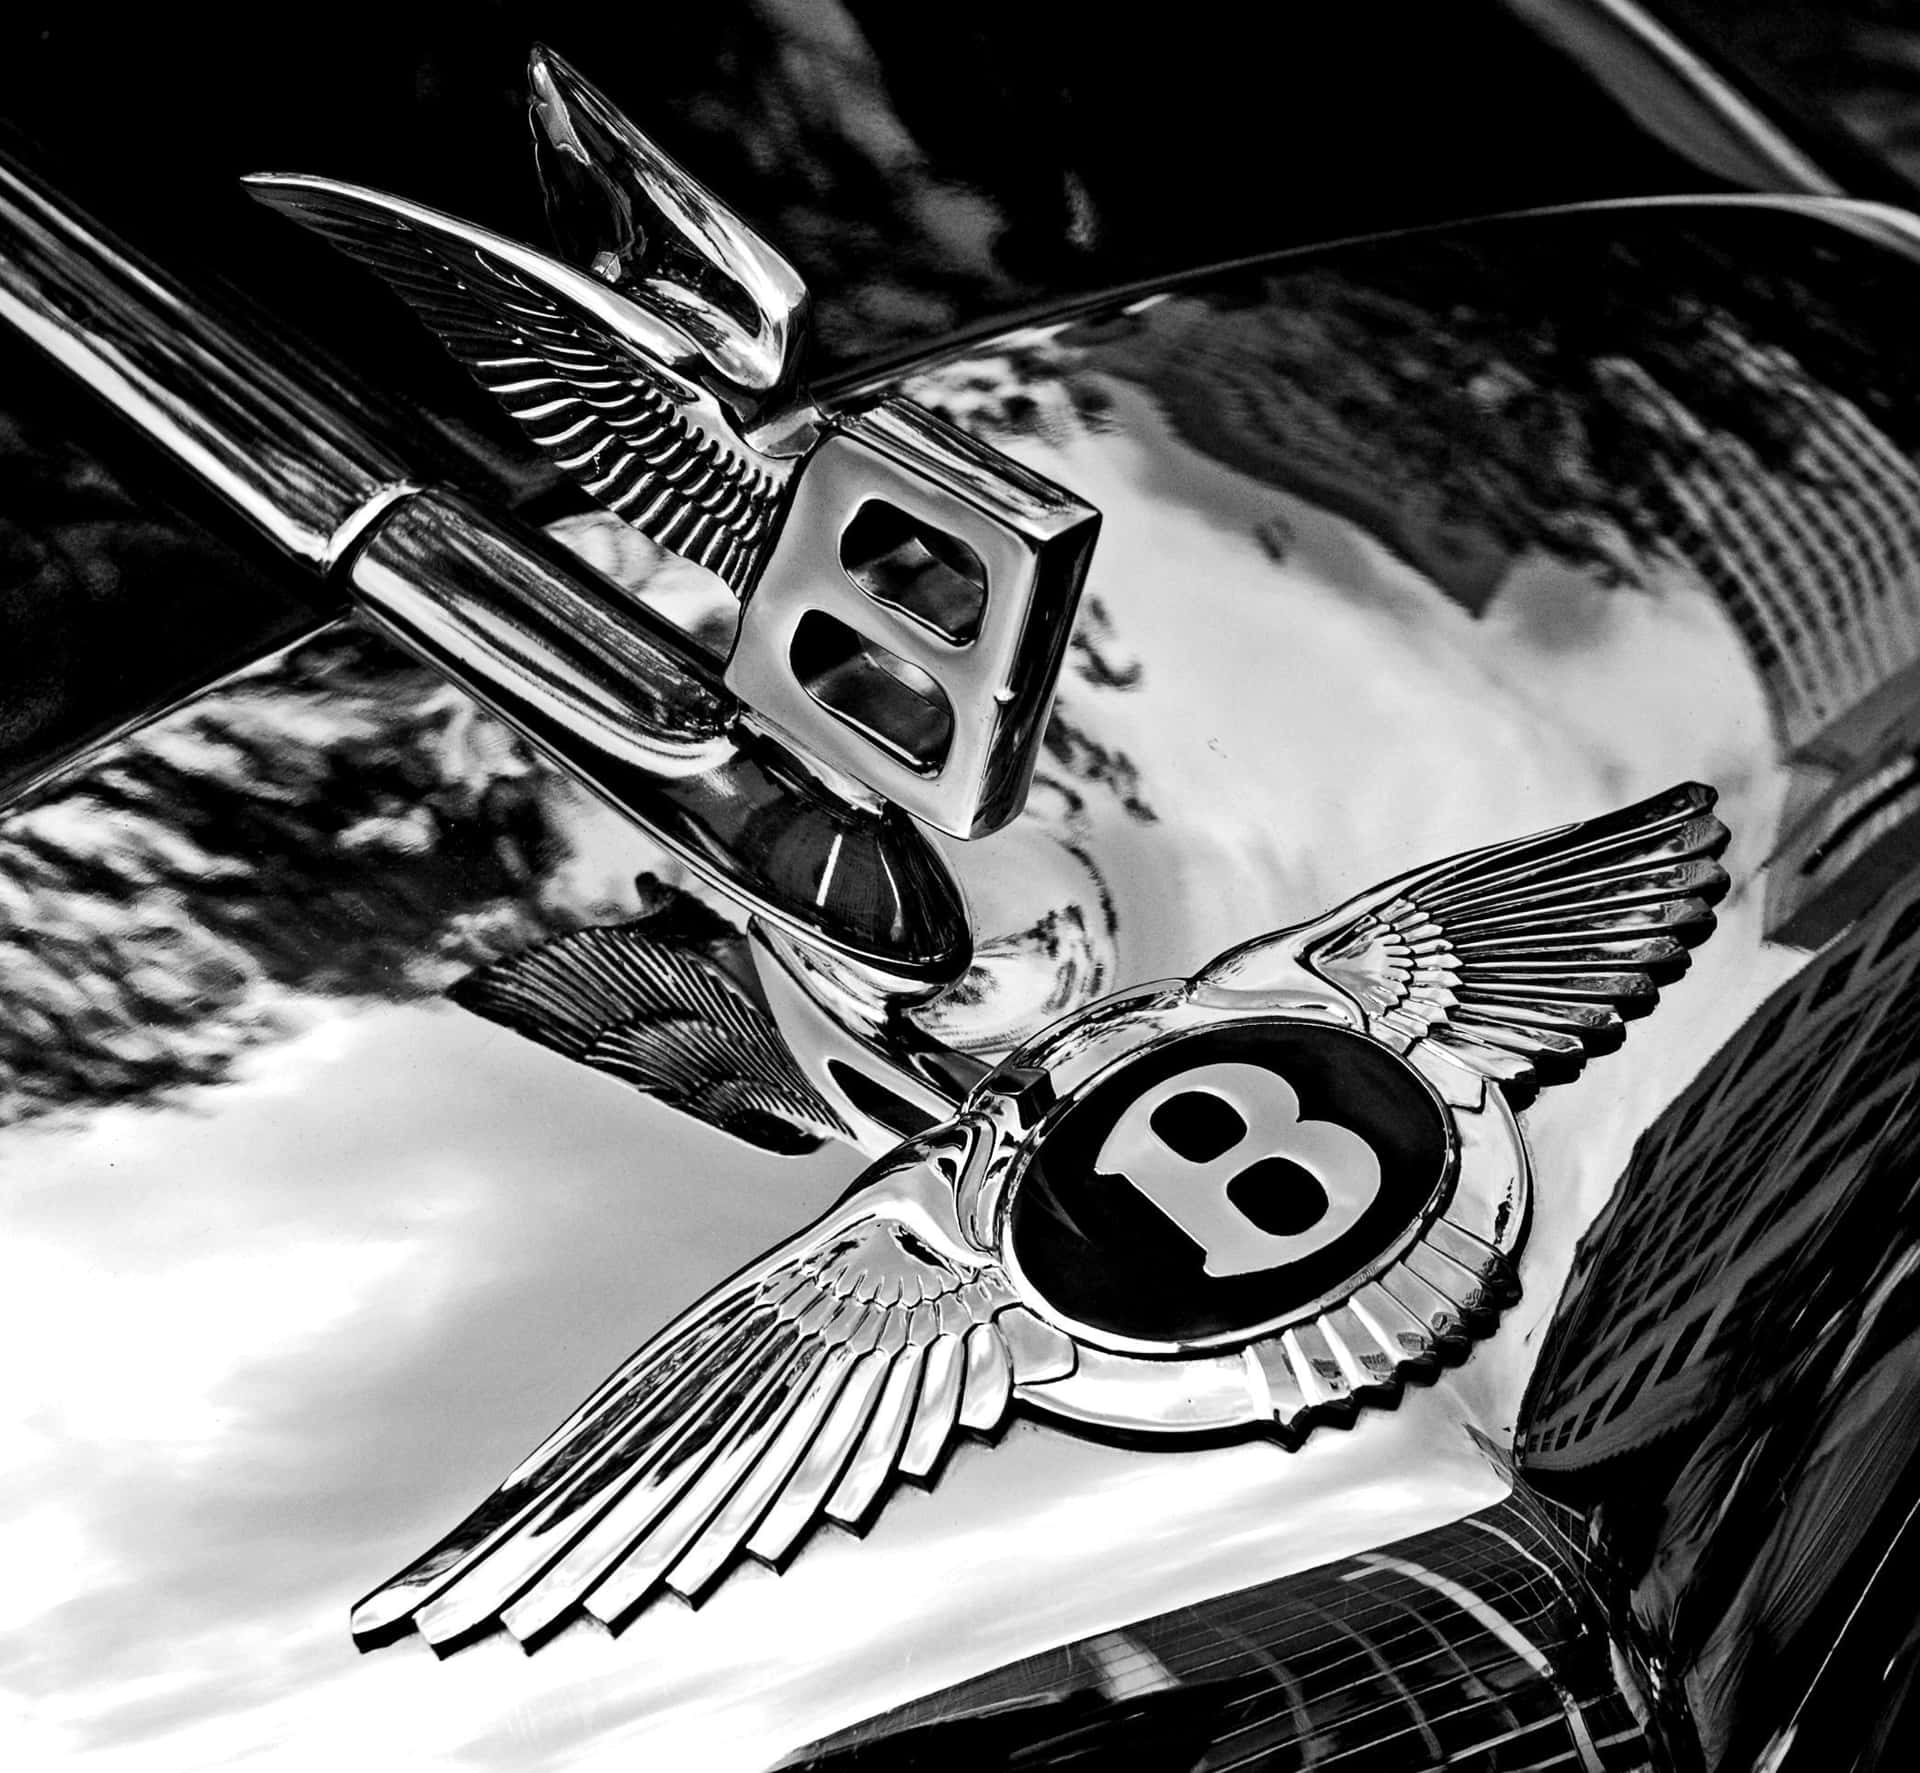 Luxusin Seiner Besten Form: Der Bentley Continental